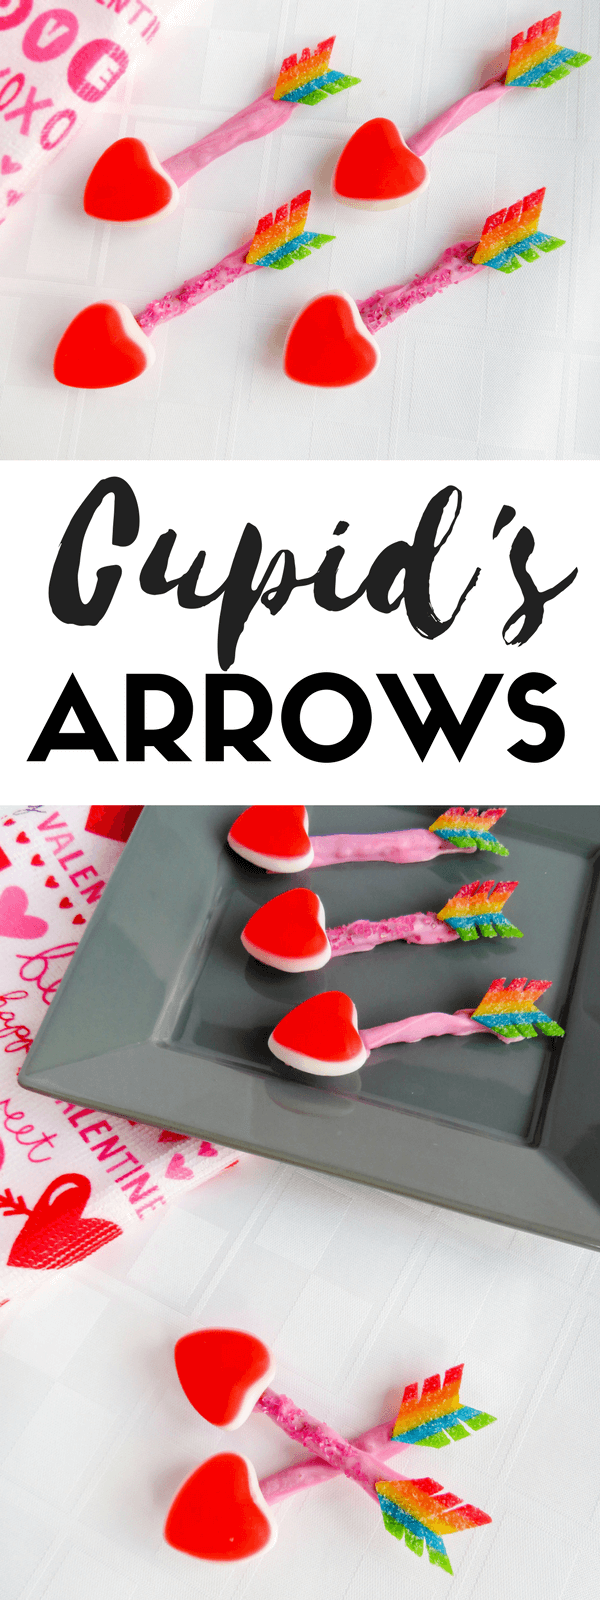 Cupid's Arrows Pin image.